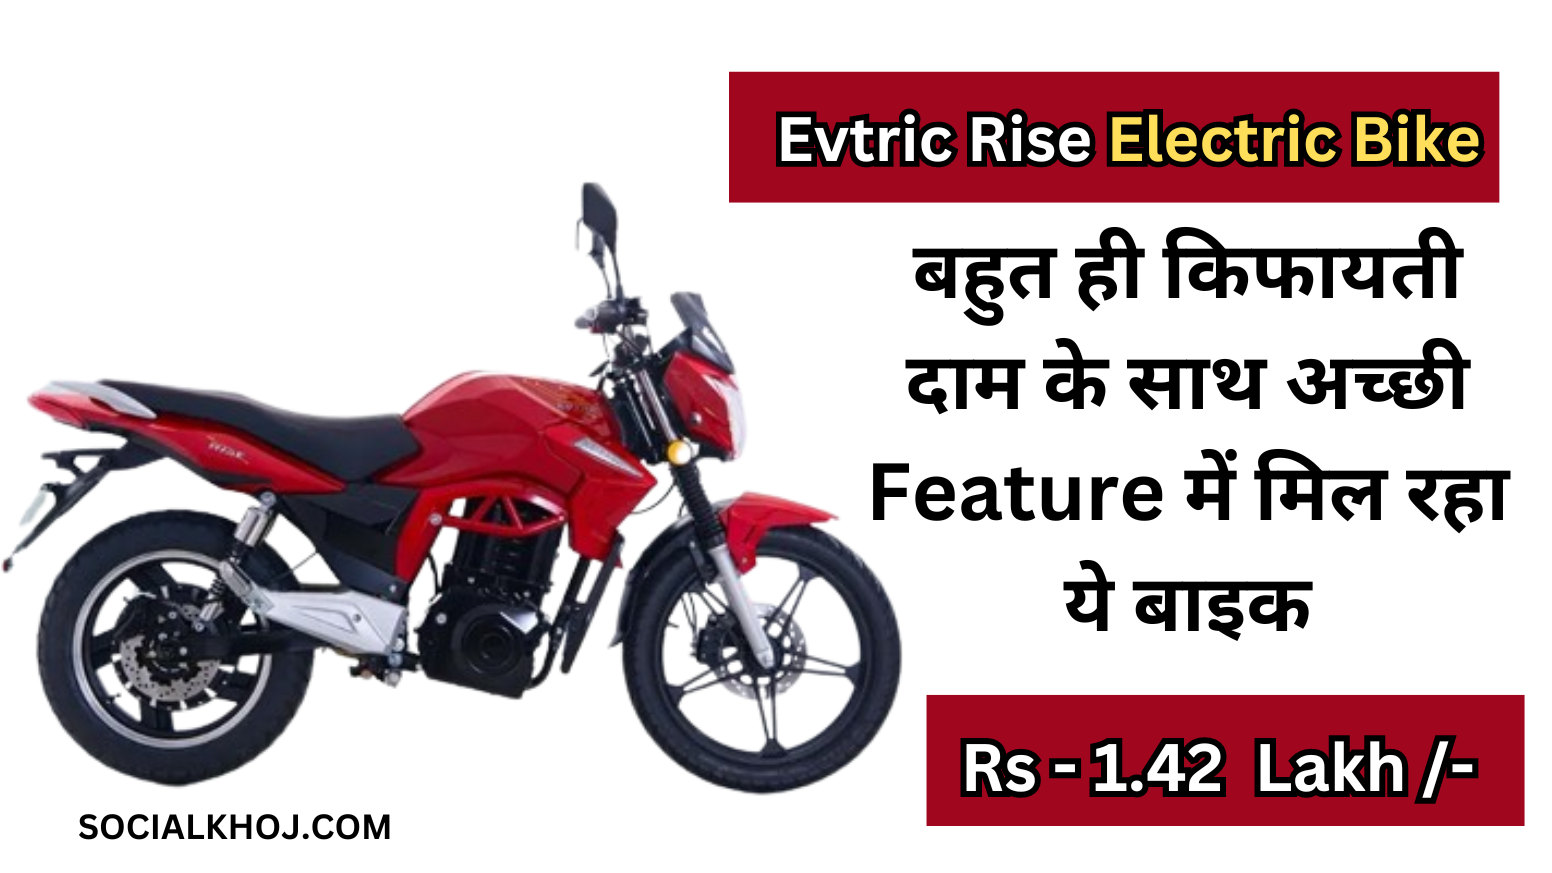 Evtric Rise Electric Bike: बहुत ही किफायती दाम के साथ अच्छी Feature,में मिल रहा ये बाइक